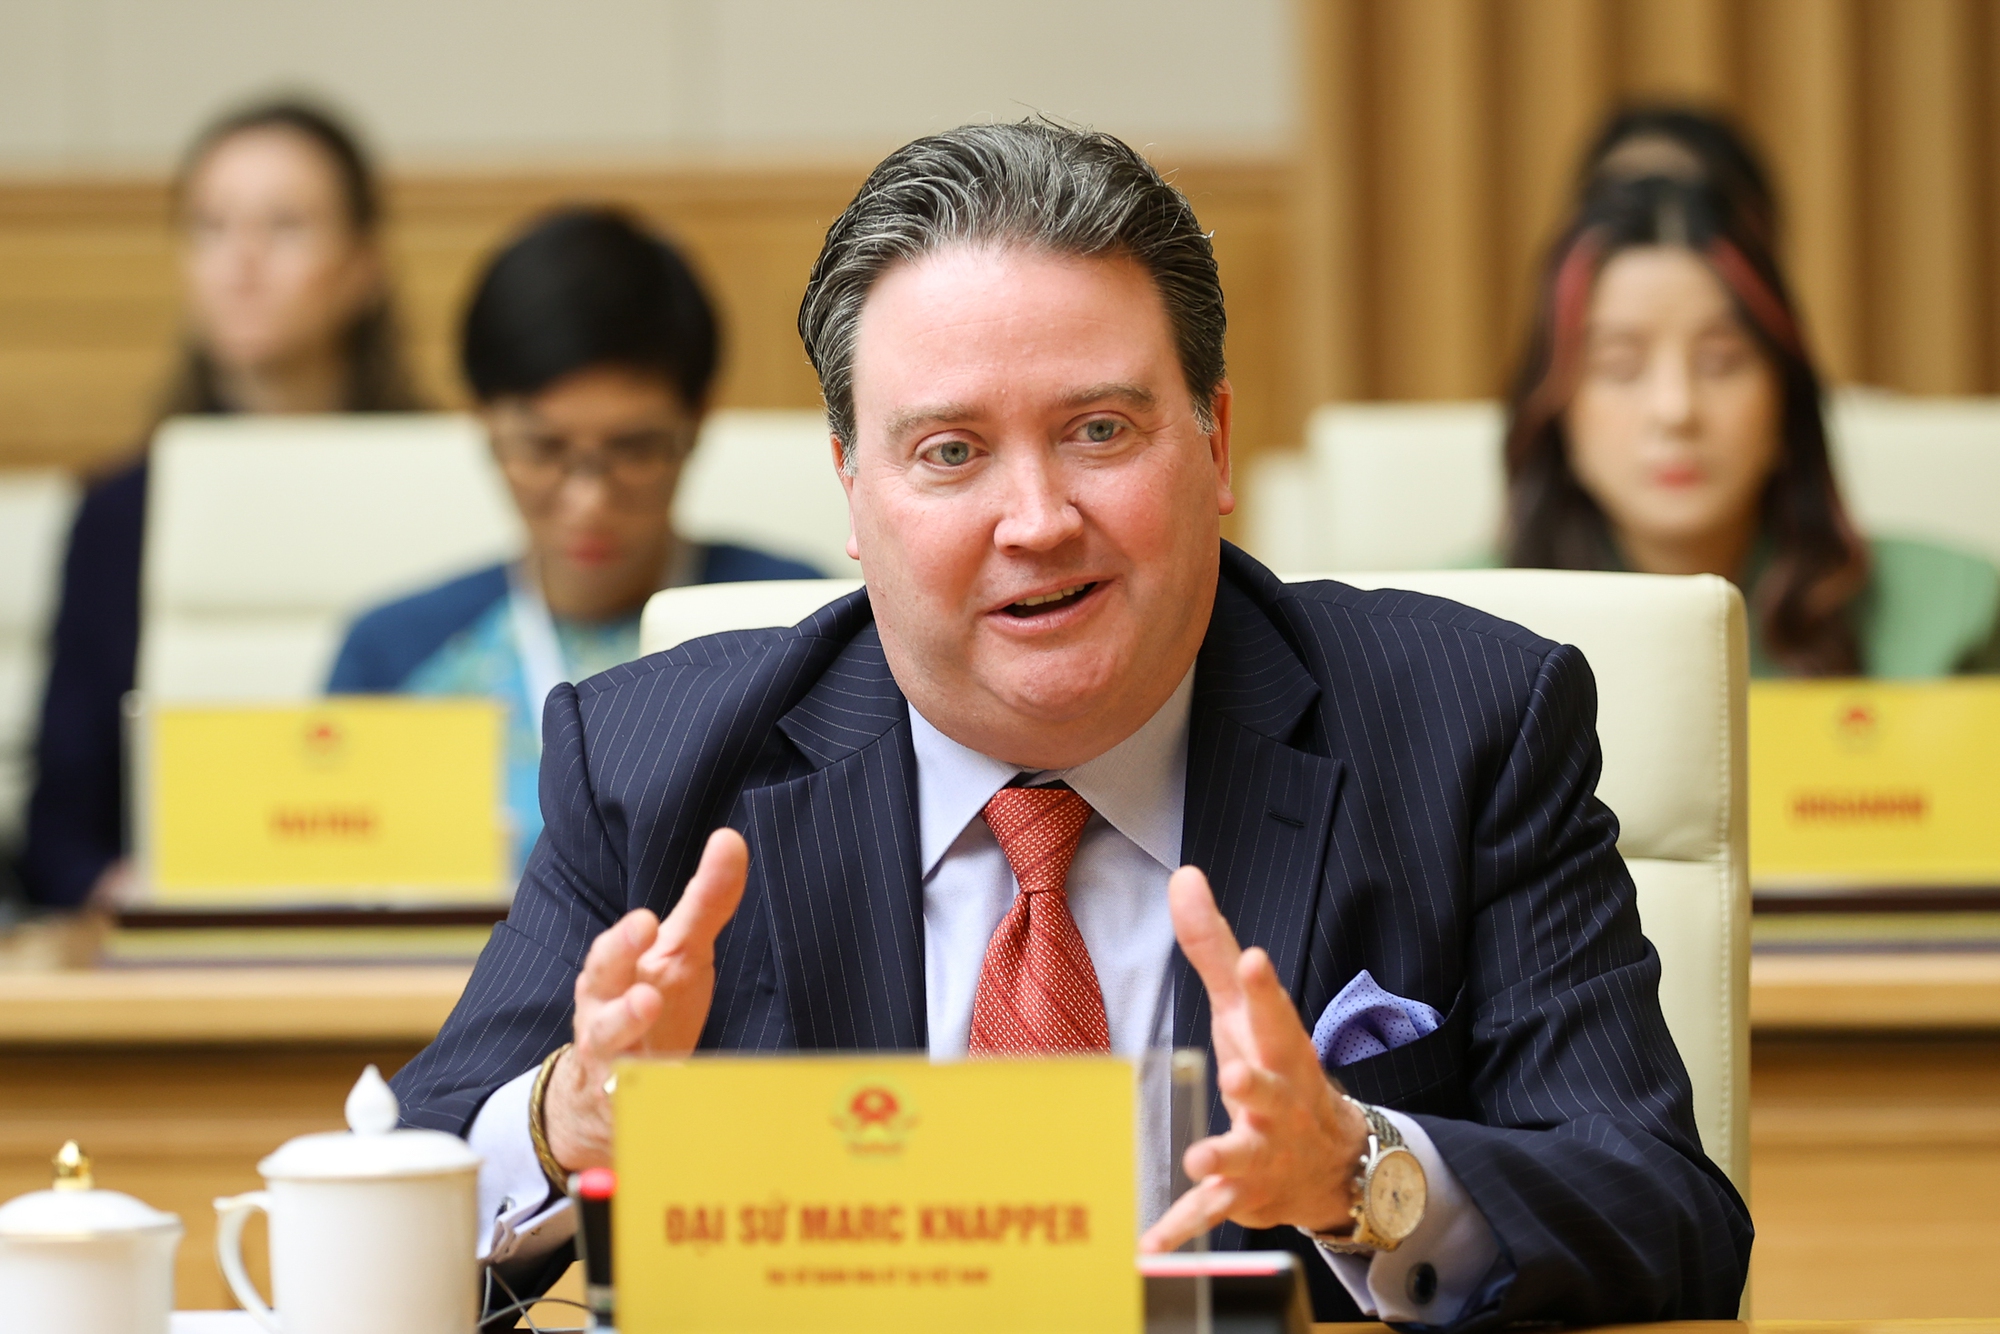 Đại sứ Hoa Kỳ tại Việt Nam Marc Evans Knapper tham dự buổi tiếp - Ảnh: VGP/Nhật Bắc